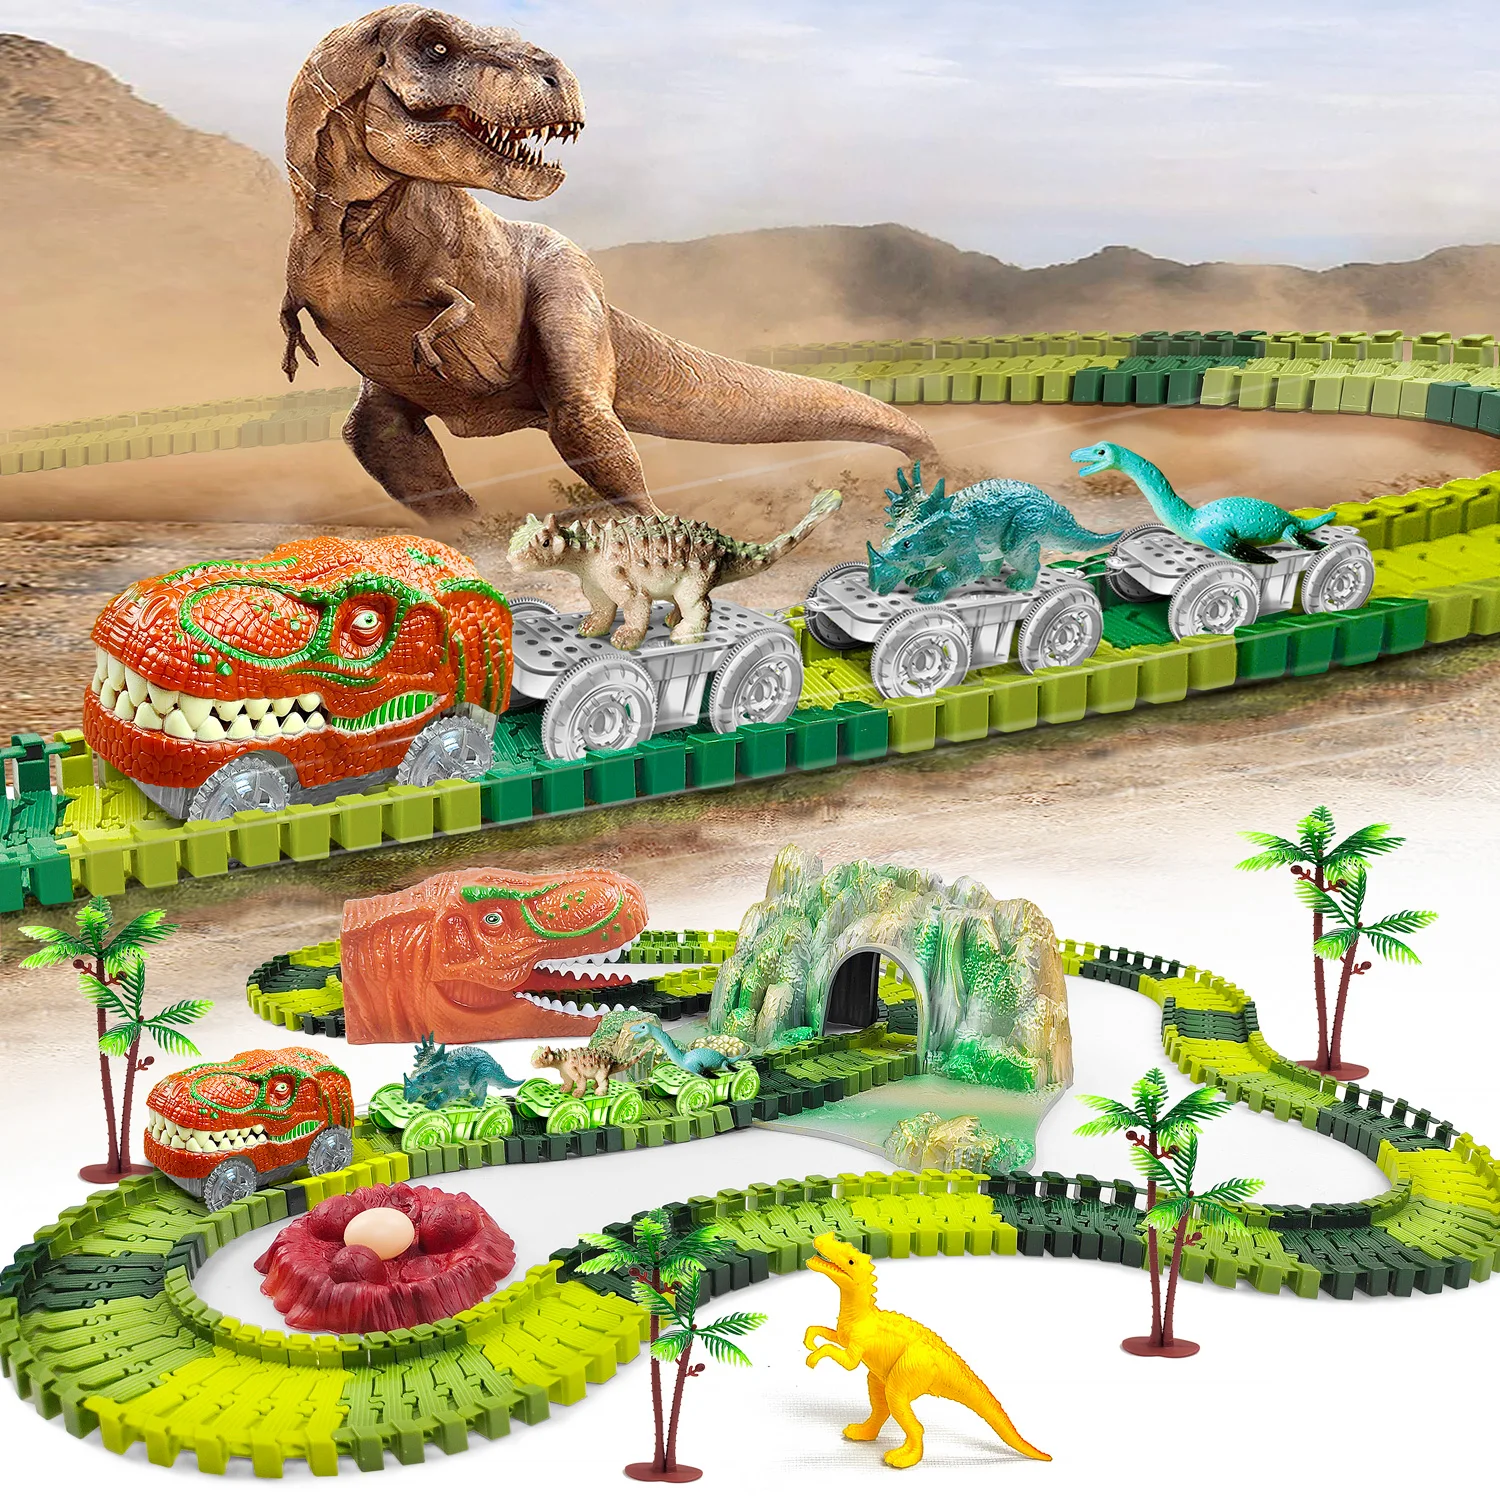 гоночный трек с динозавром набор игрушек динозавр железная дорога развивающая машинка гибкий гоночный трек игрушки для мальчиков пода Игрушечный поезд-динозавр, создайте динозавр, гоночный путь, гибкий трек, игровой набор, динозавры, игрушки, гоночный автомобиль для старых мальчиков и девочек